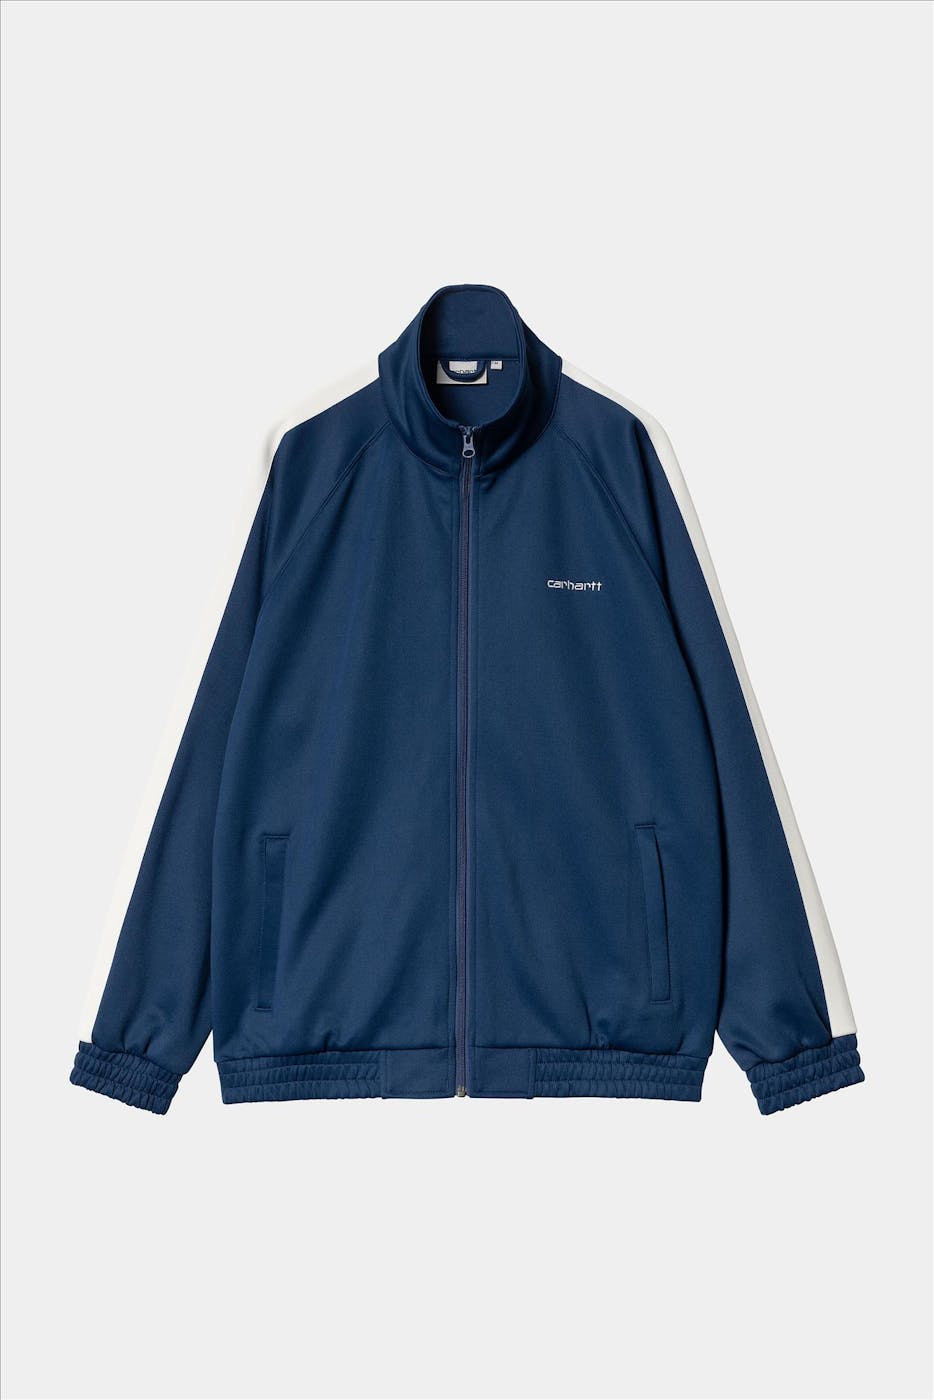 Carhartt WIP - Donkerblauwe Benchill jas